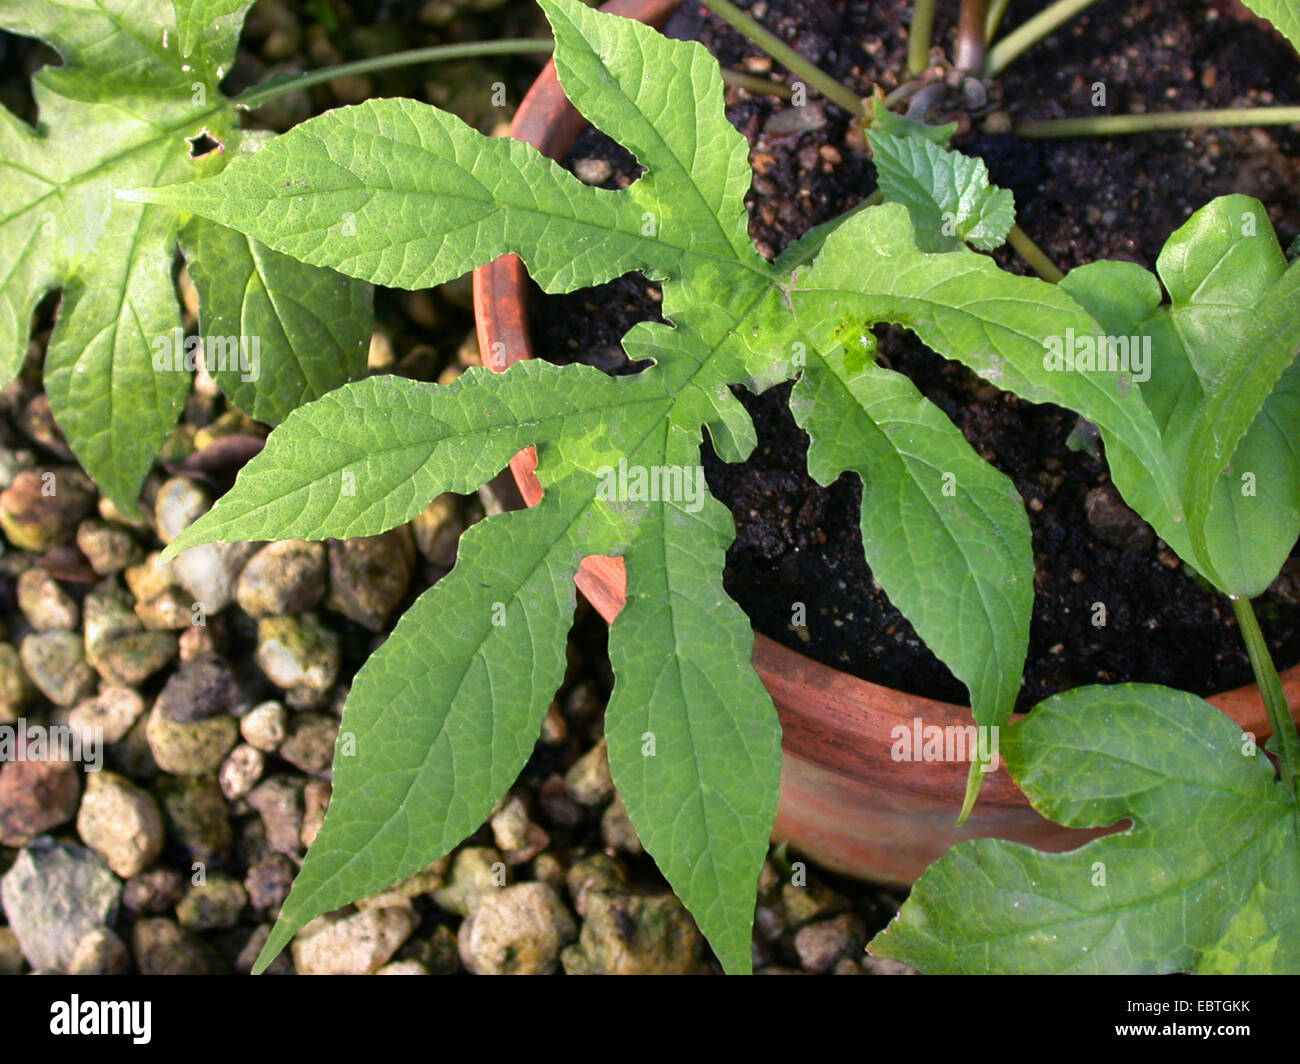 Dorstenia argentata (Dorstenia argentata), leaf Stock Photo